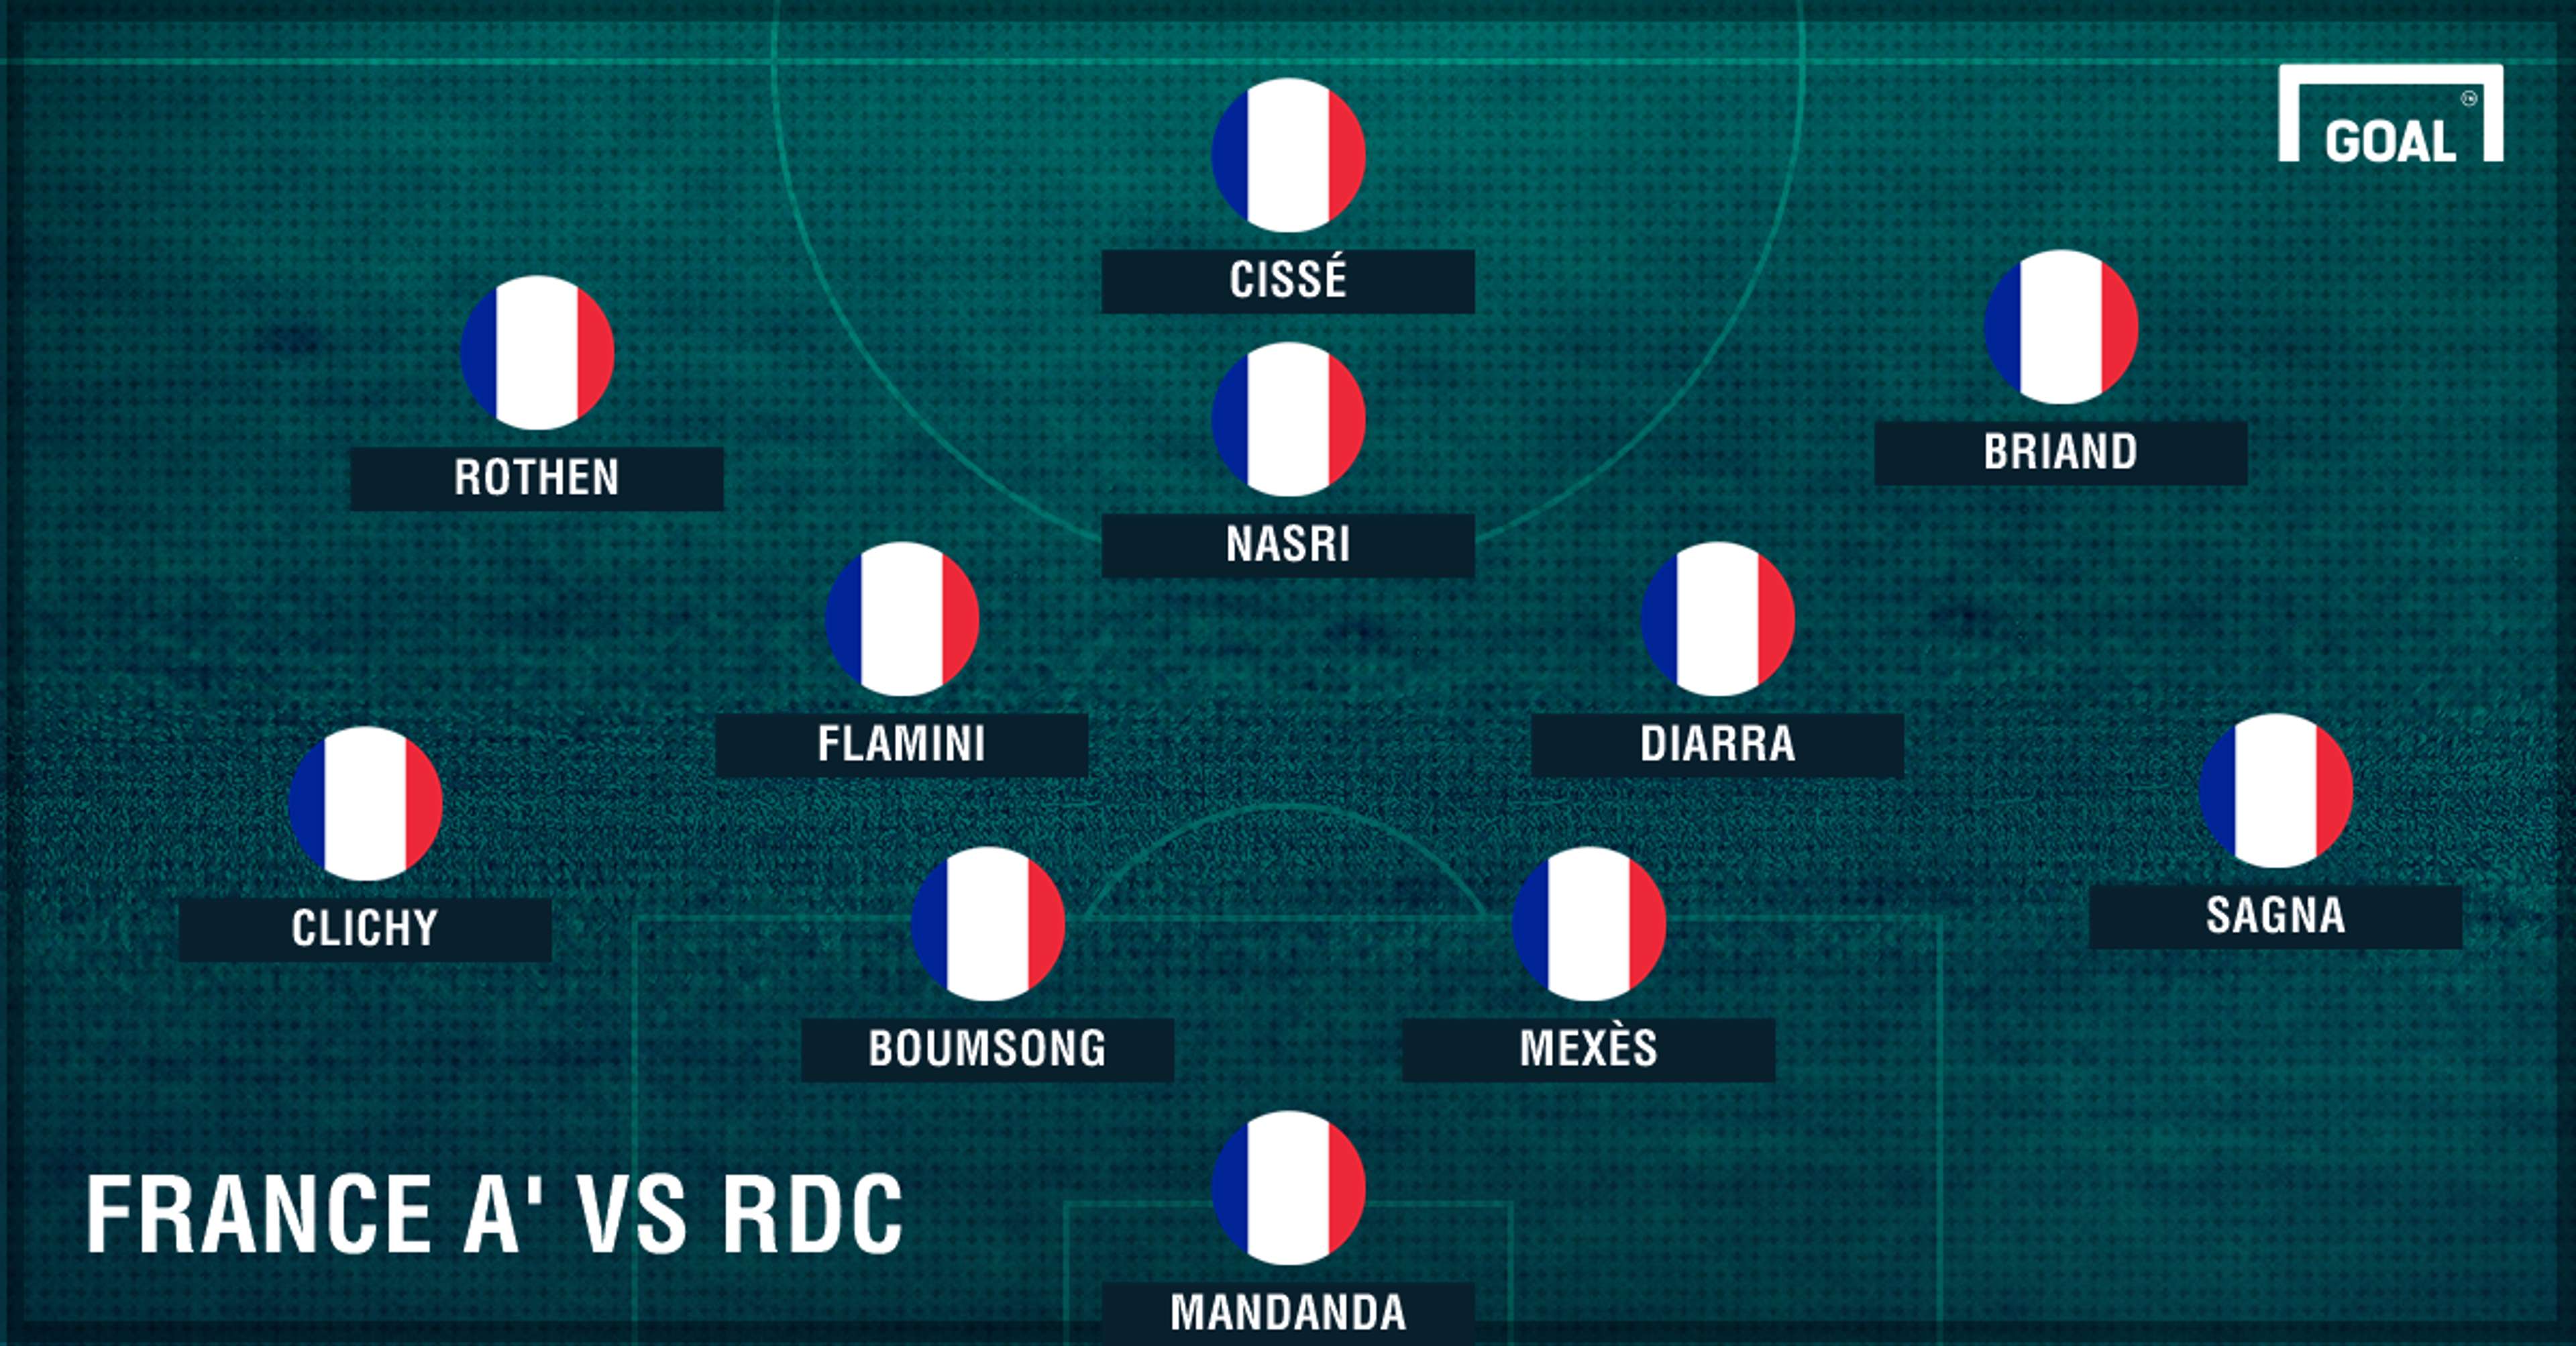 France A' vs RDC